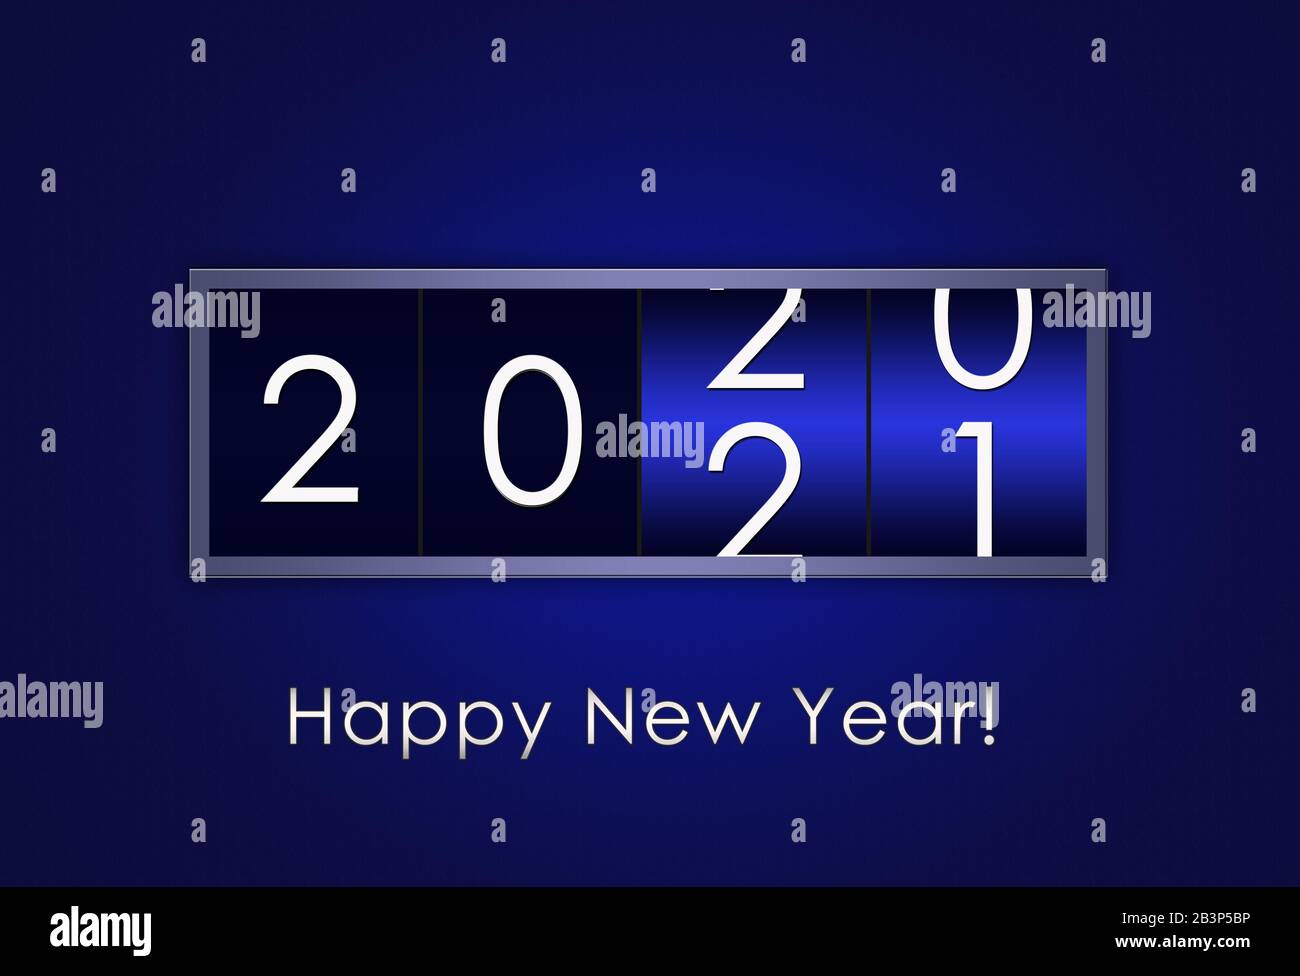 Countdown-Timer auf blauem Hintergrund mit Änderung der Jahreszahl von 2020 auf 2021.Die Farbe des Jahres 2020 - blau Stockfoto